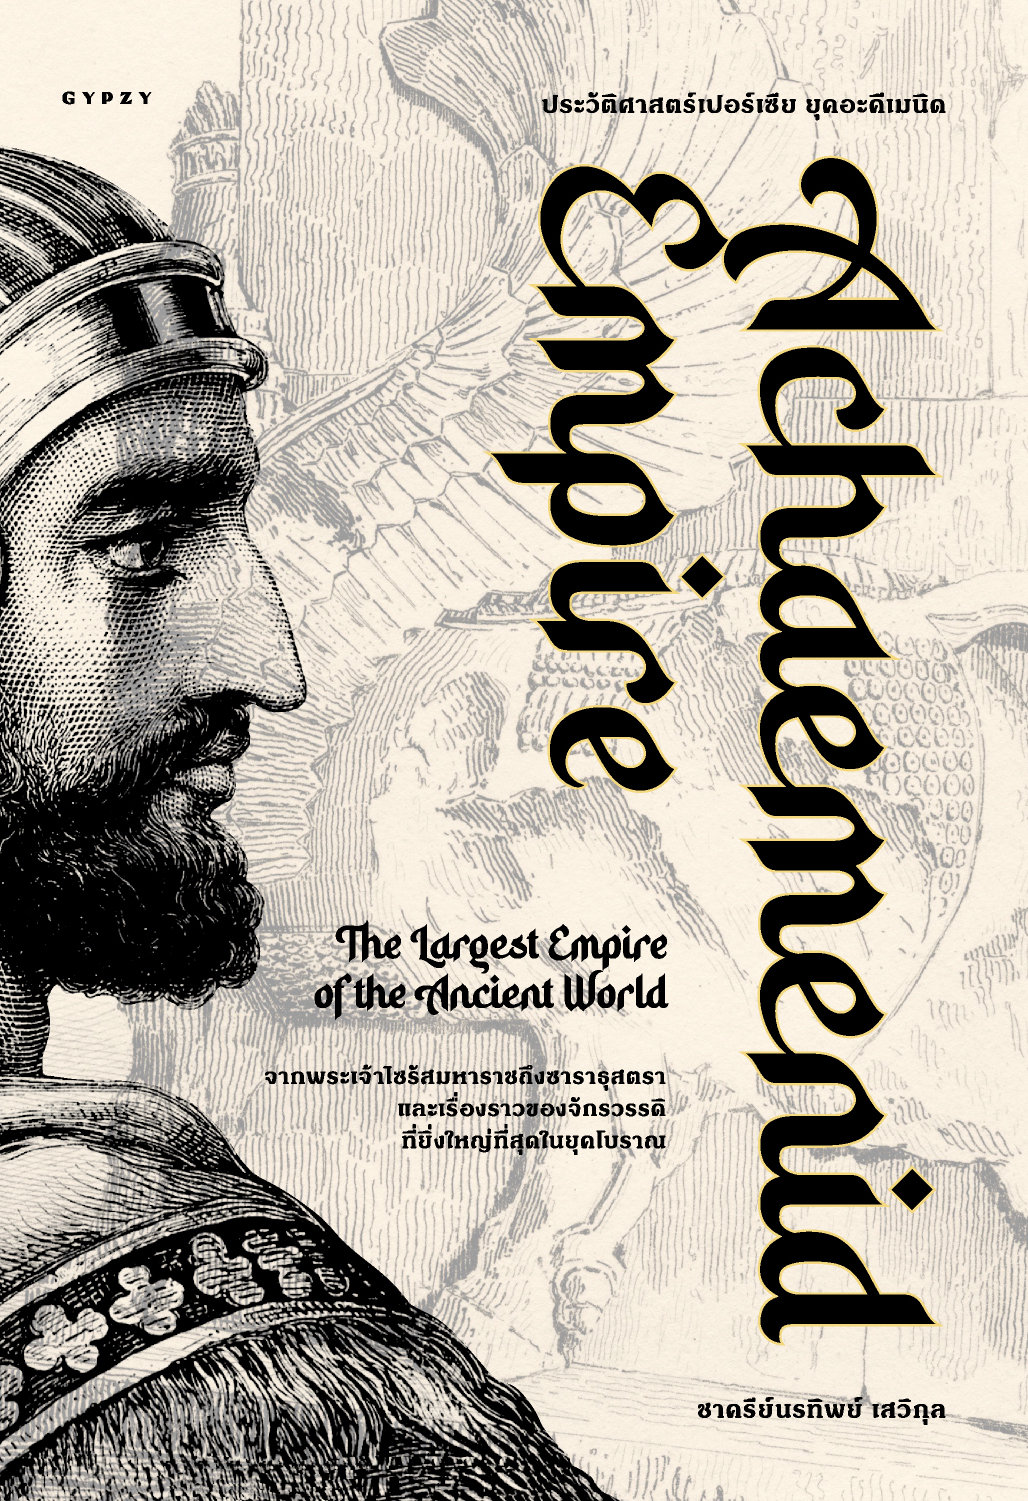 ประวัติศาสตร์เปอร์เซีย ยุคอะคีเมนิด  Achaemenid Empire  /  ชาครีย์นรทิพย์ เสวิกุล